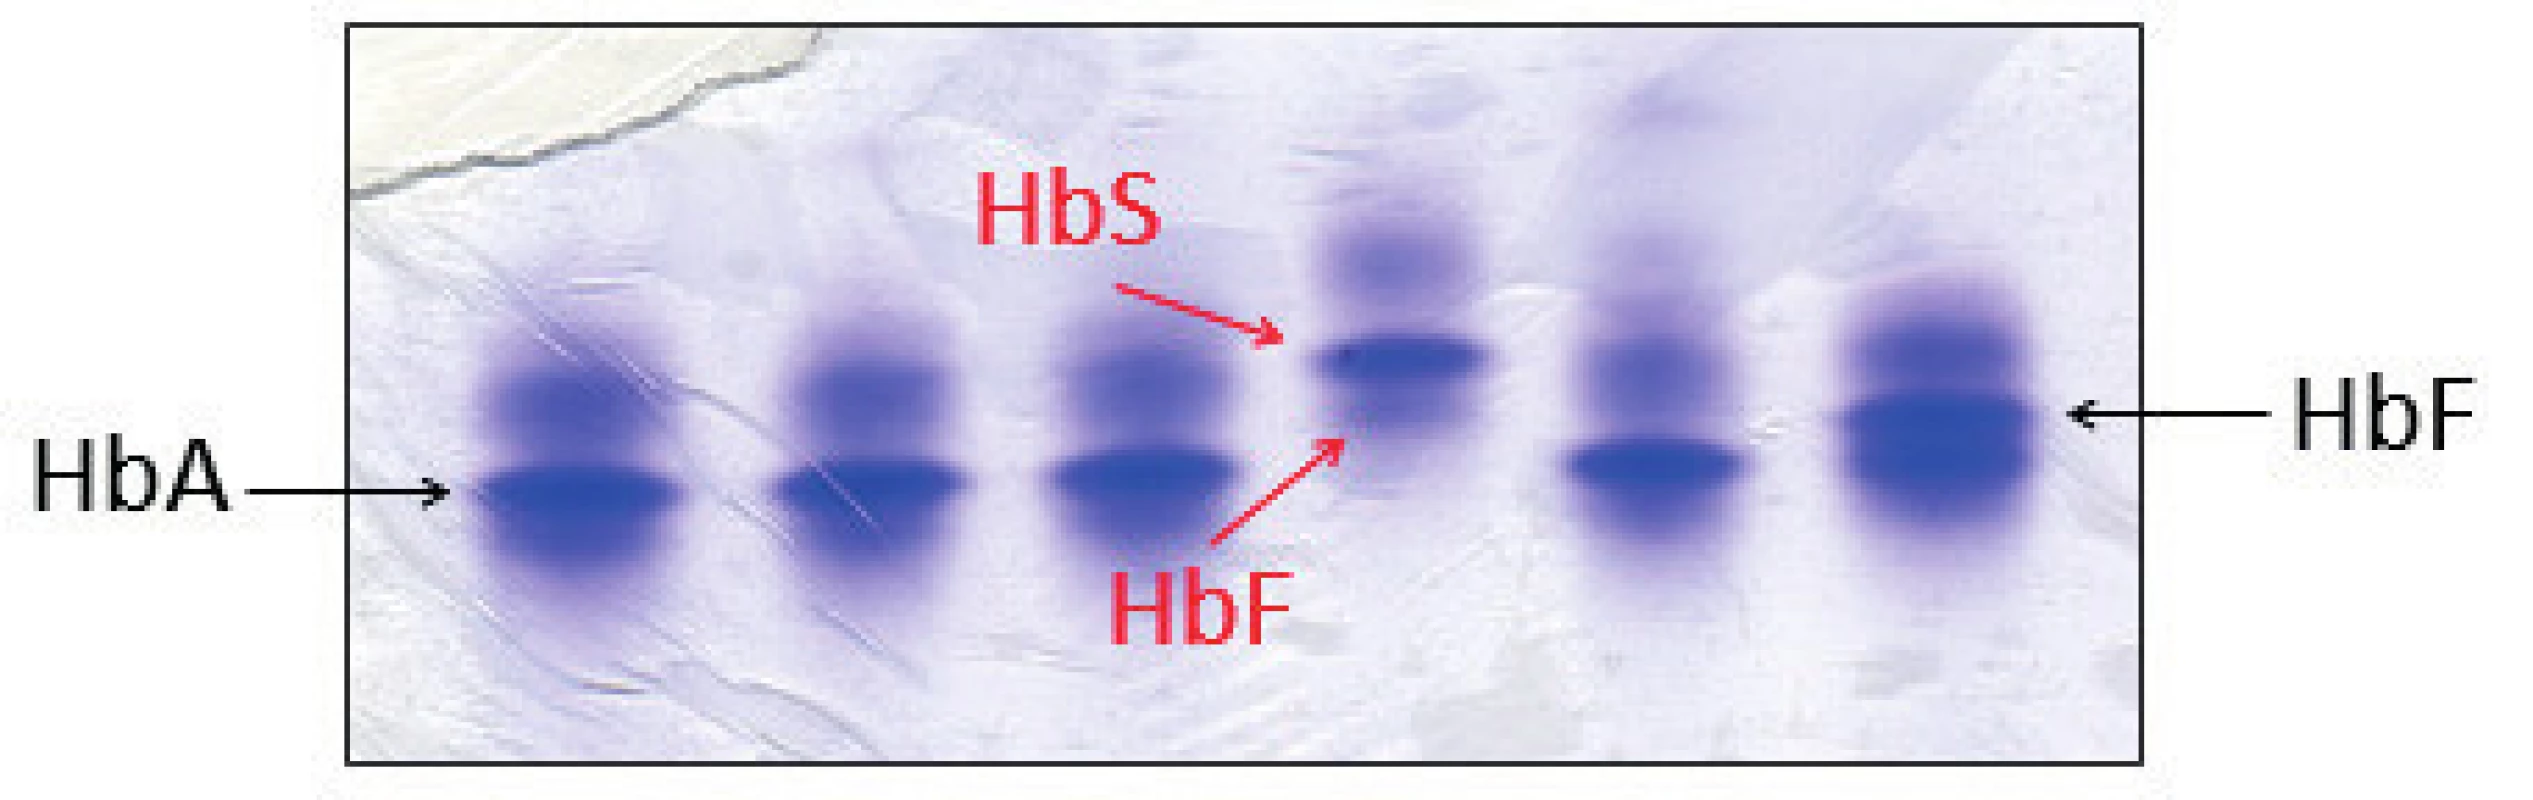 Detekce HbS proteinovou elektroforézou na polyakrylamidovém gelu barveném Coomasie blue. Červené šipky označují frakce HbS a HbF jako jediné hemoglobiny u pacienta se srpkovitou anémií, což odpovídalo zjištěnému genotypu pacienta. (Hemato-onkologická klinika, FN a LF Univerzity Palackého v Olomouci)
Fig. 5. Detection of HbS by protein electrophoresis on polyacrylamid gel stained with Coomasie blue. Red arrows indicate the HbS and HbF fractions as the only hemoglobins in a patient with sickle cell disease, which corresponds with patient’s genotype.